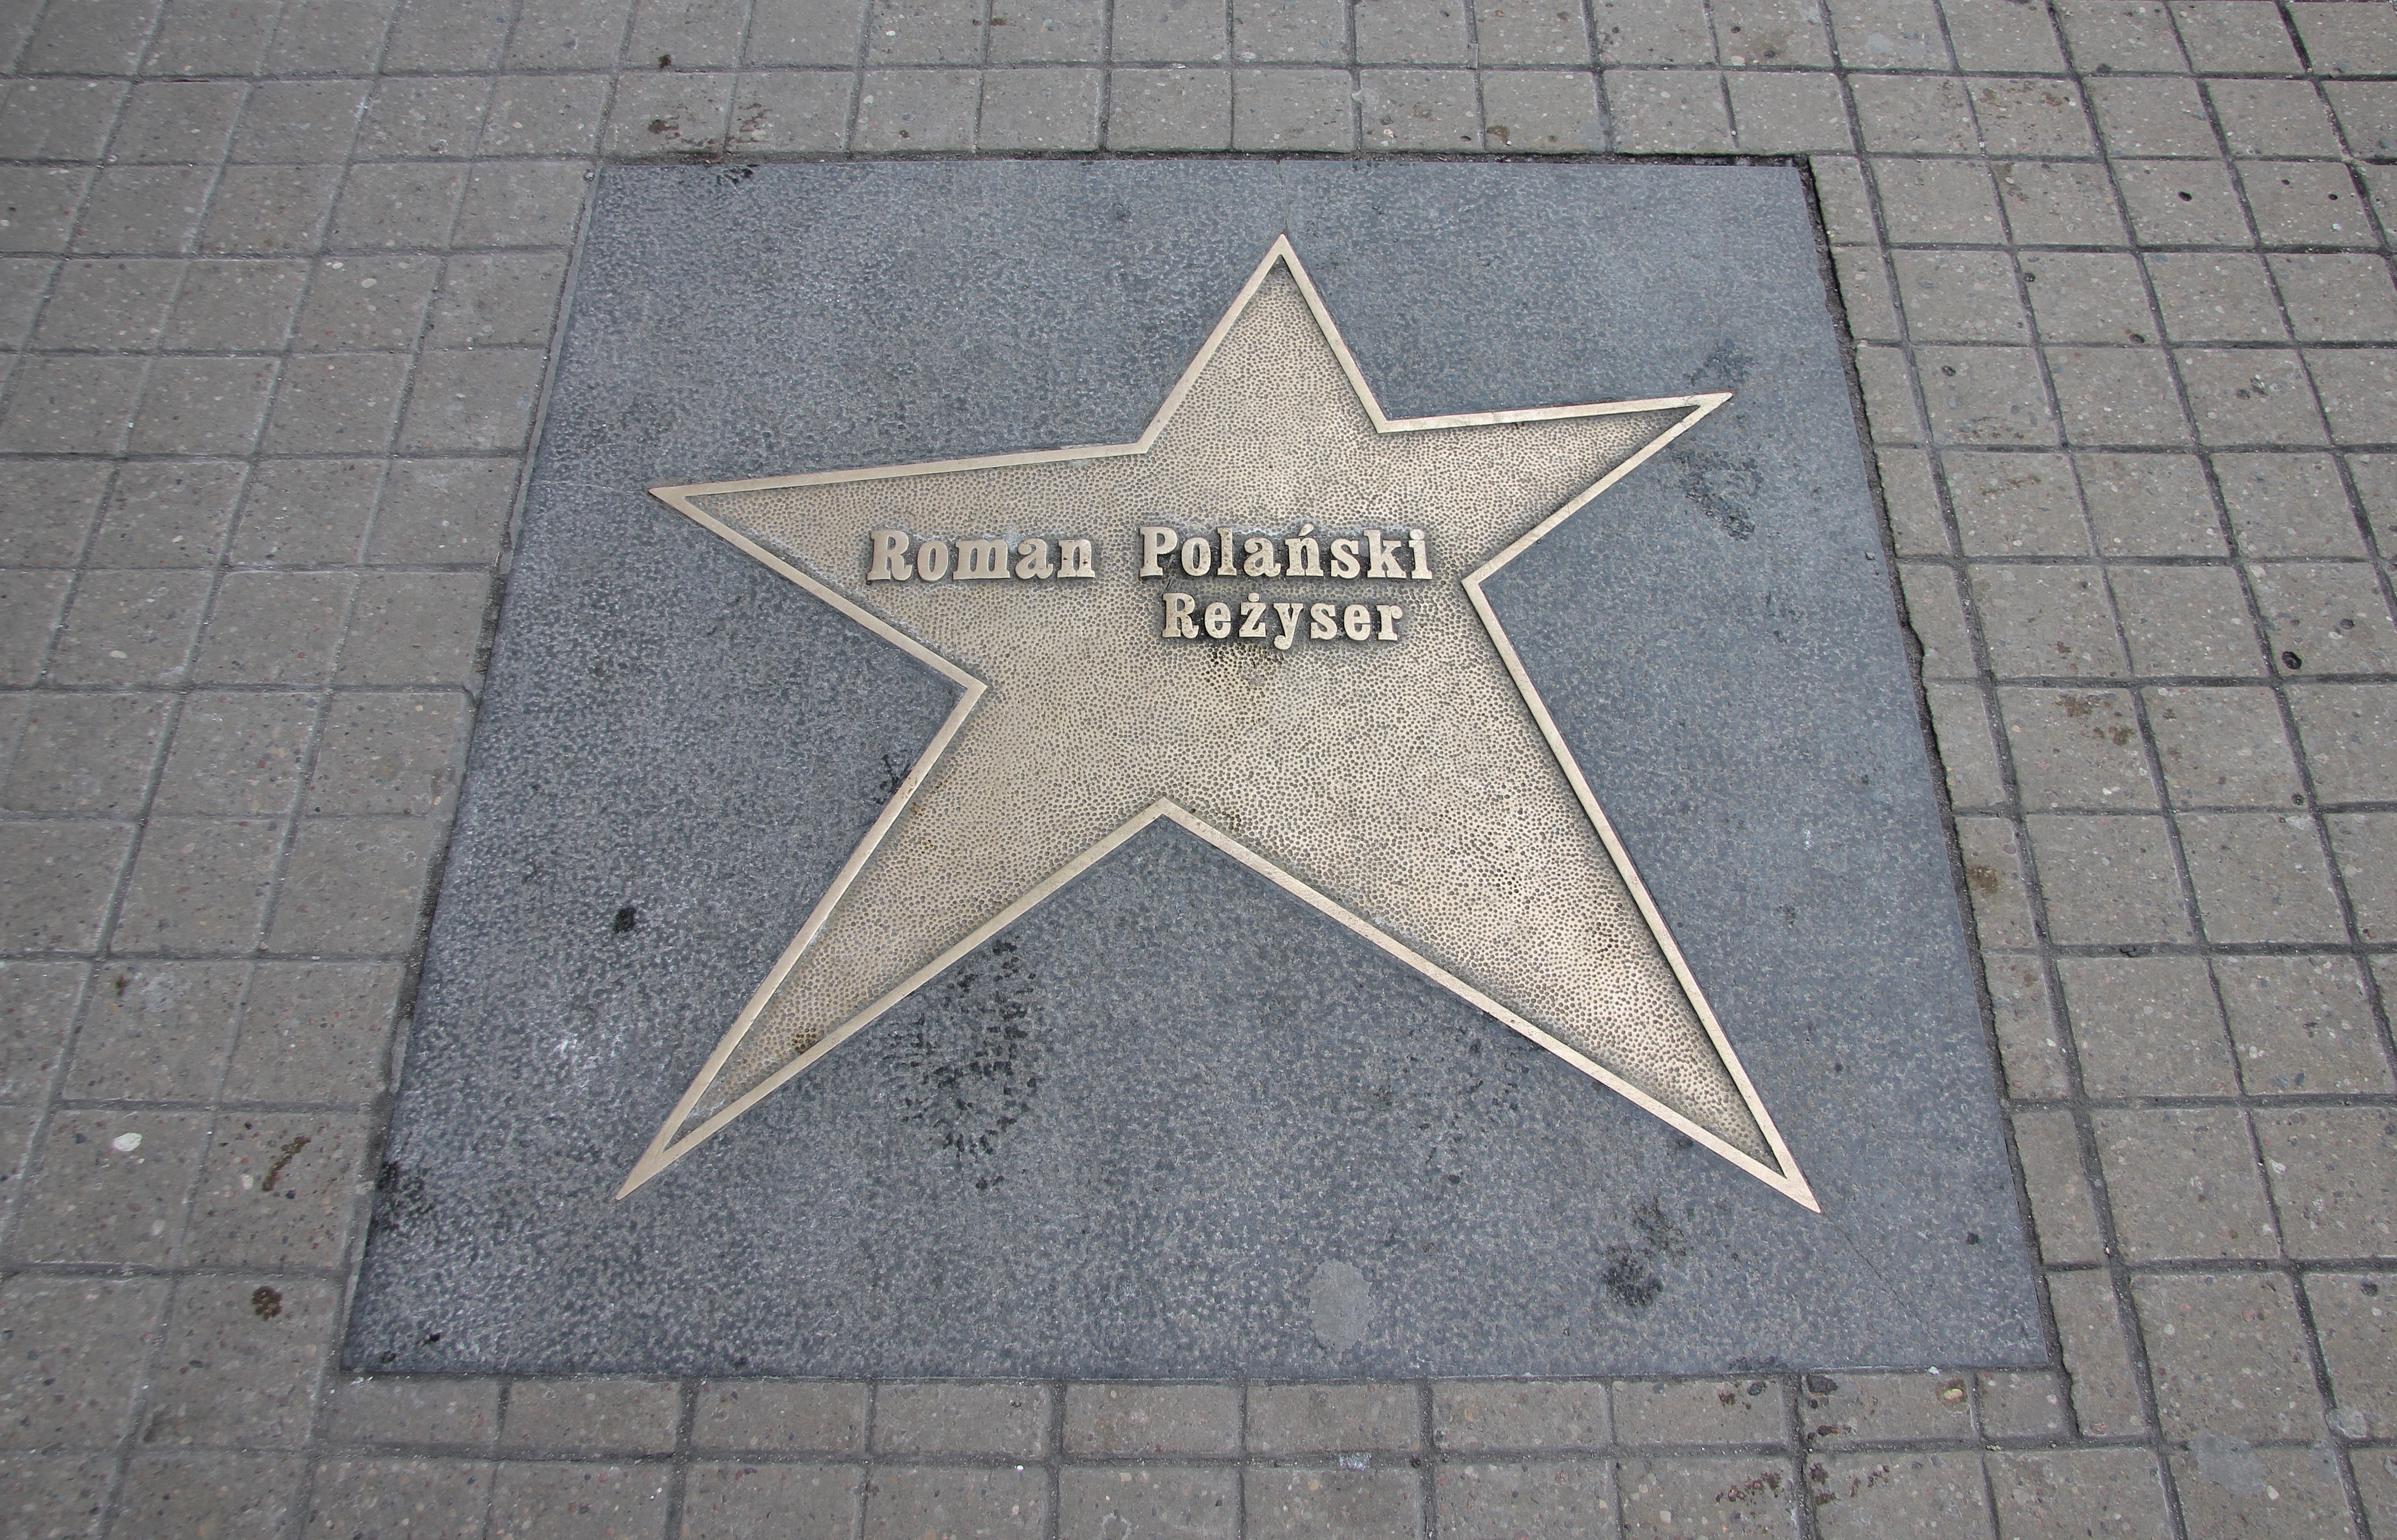 Roman Polanski, Lodz, hall of fame, Piotrkowska street,